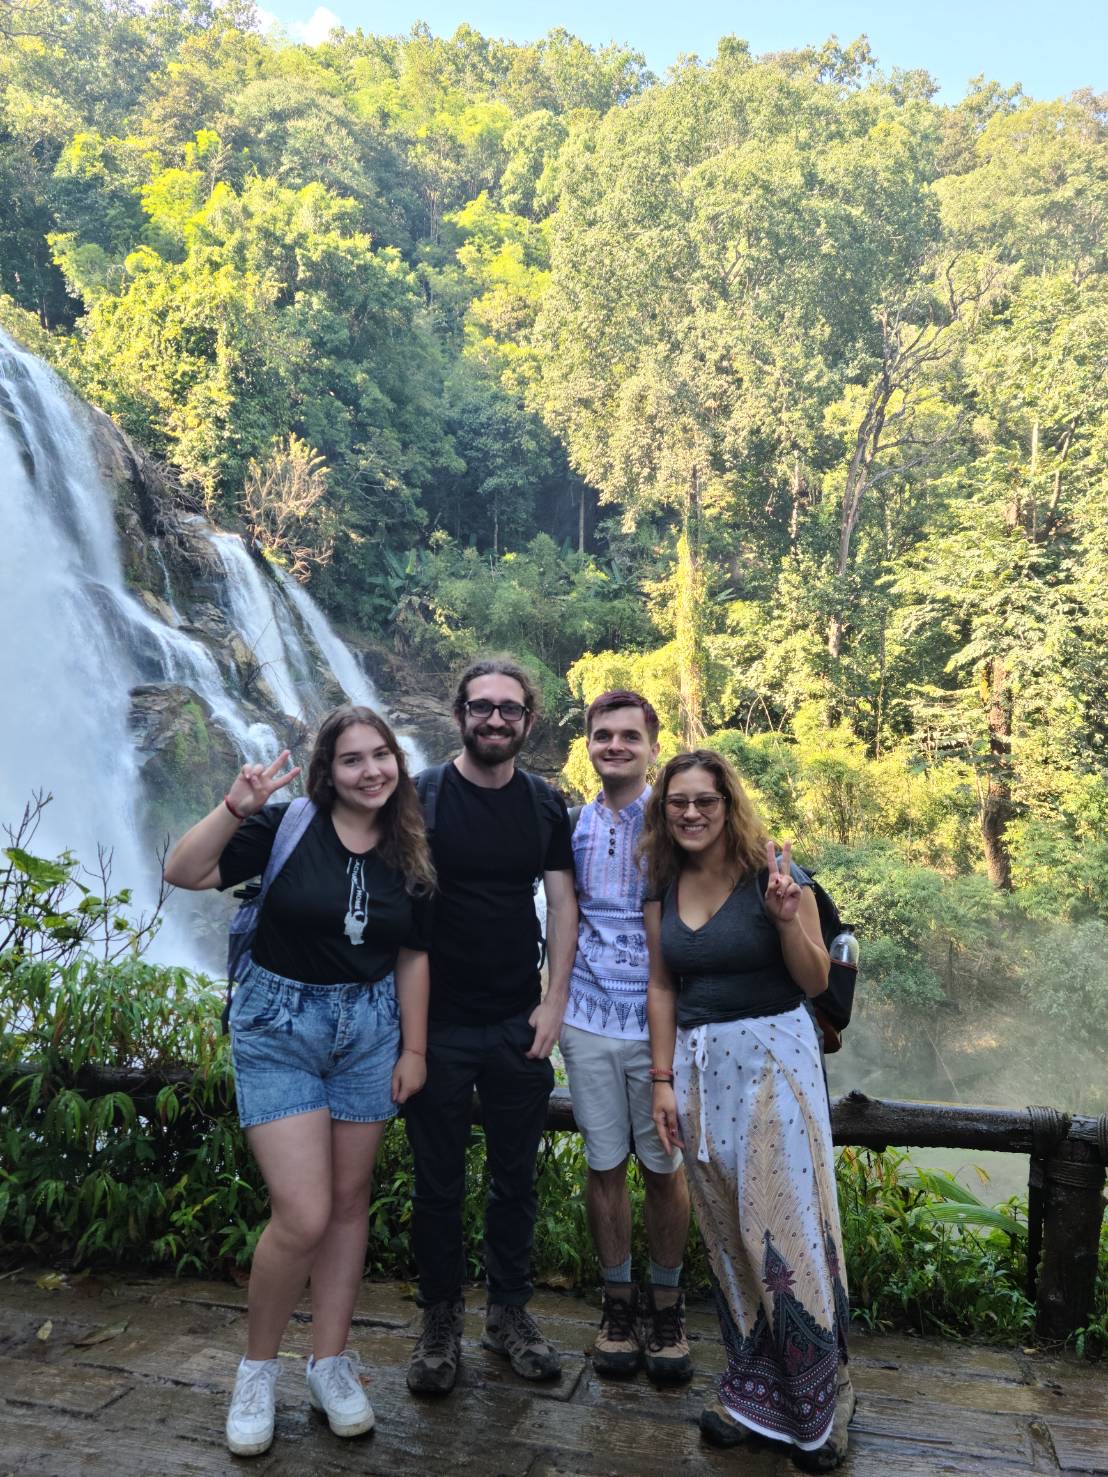 Doi Inthanon Waterfall